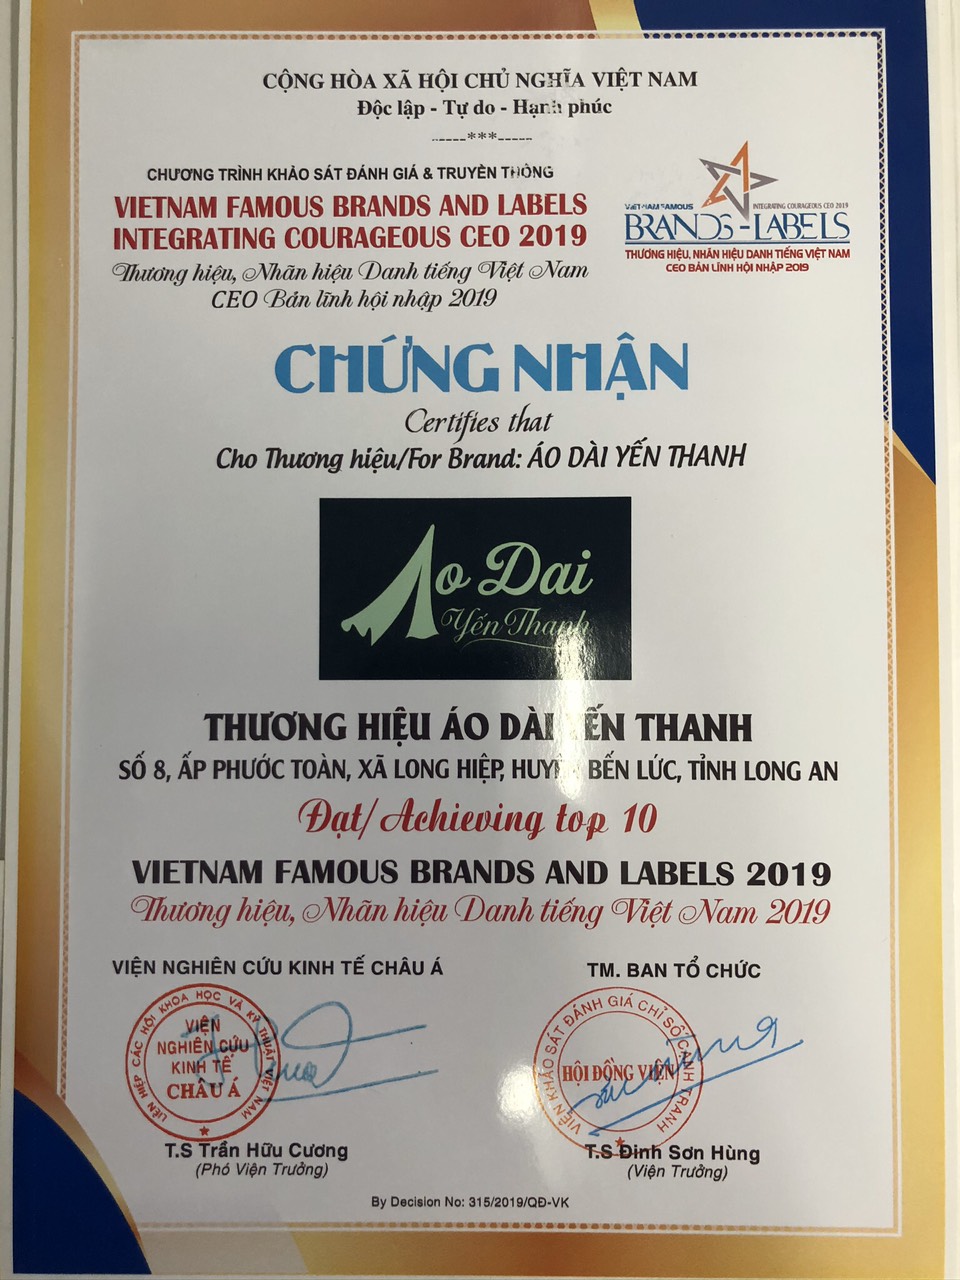 Thương hiệu Áo Dài Yến Thanh vừa qua đã đạt Top 10 Thương hiệu, Nhãn hiệu danh tiếng Việt Nam 2019